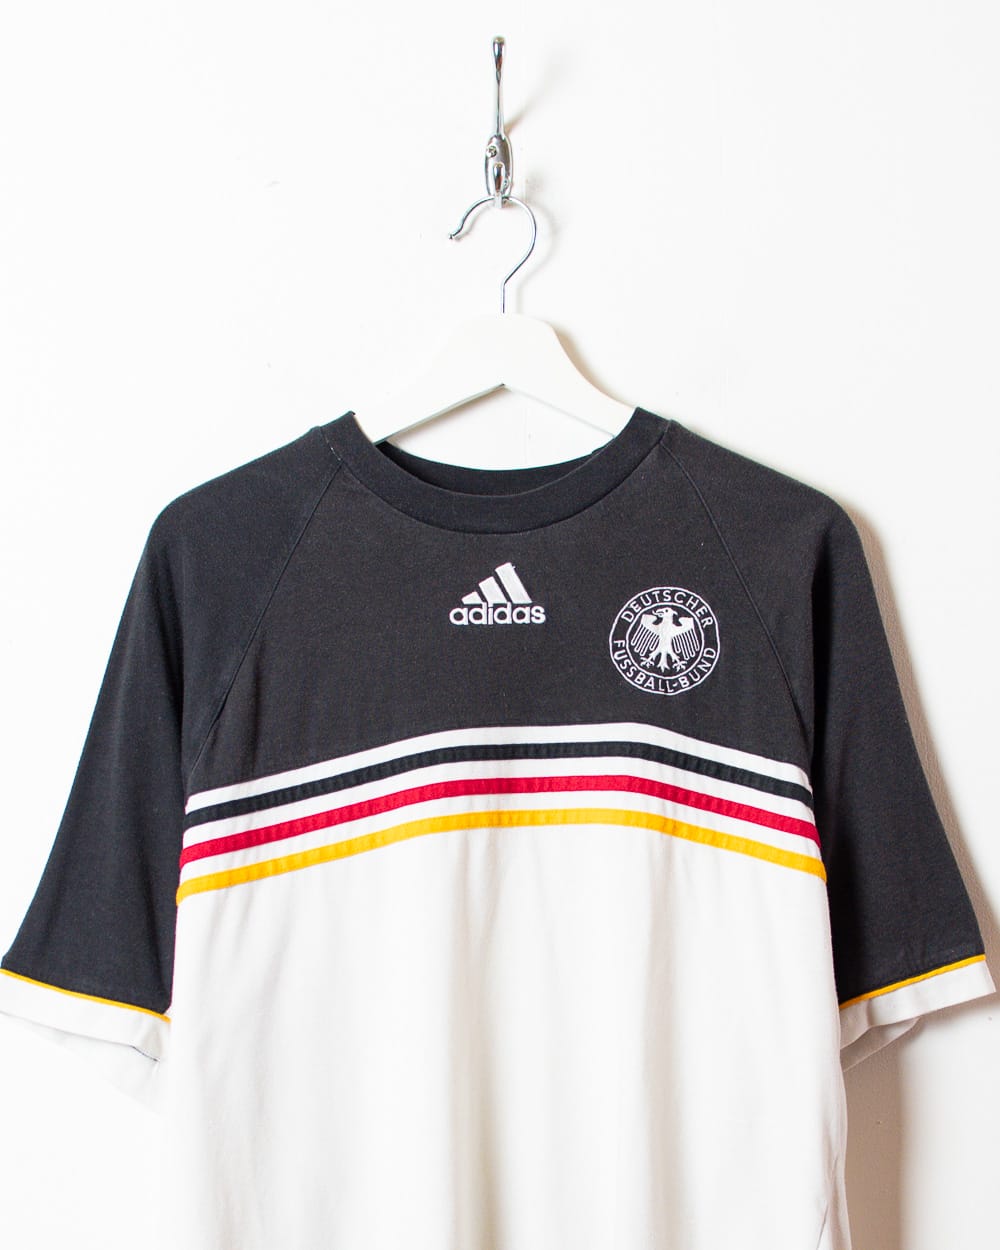 White Adidas Germany 1998/99 Training T-Shirt - Large